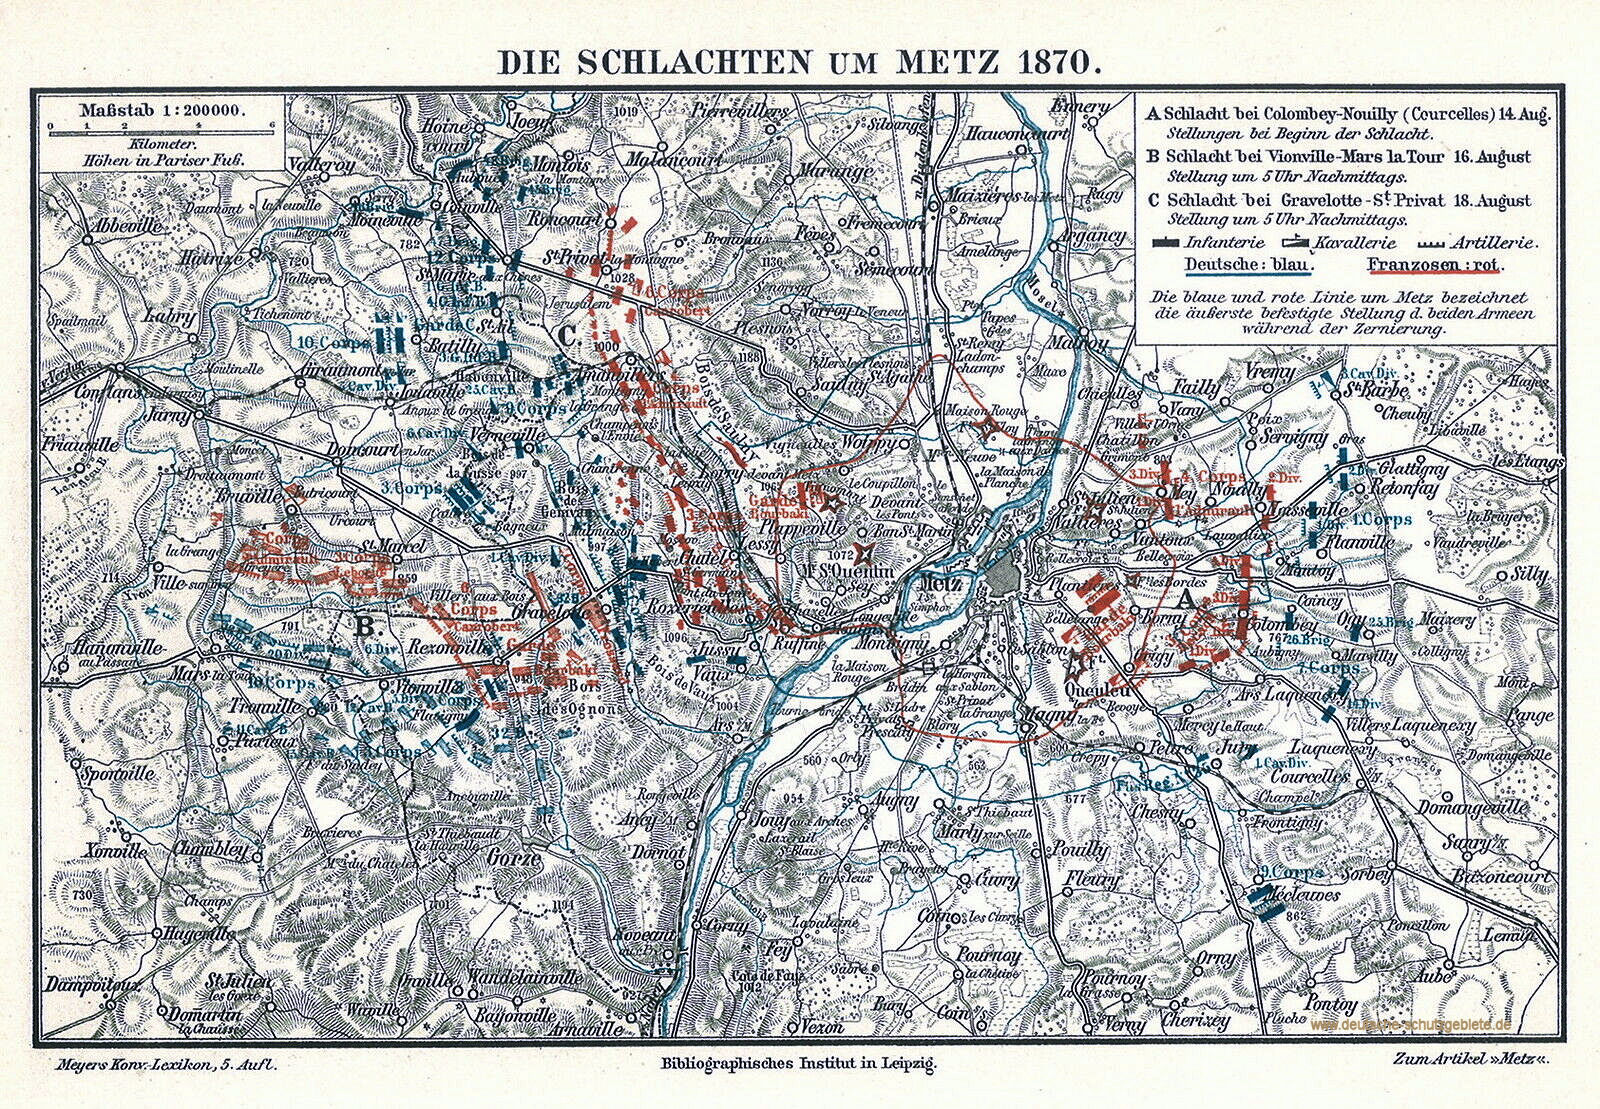 Die Schlachten um Metz 1870